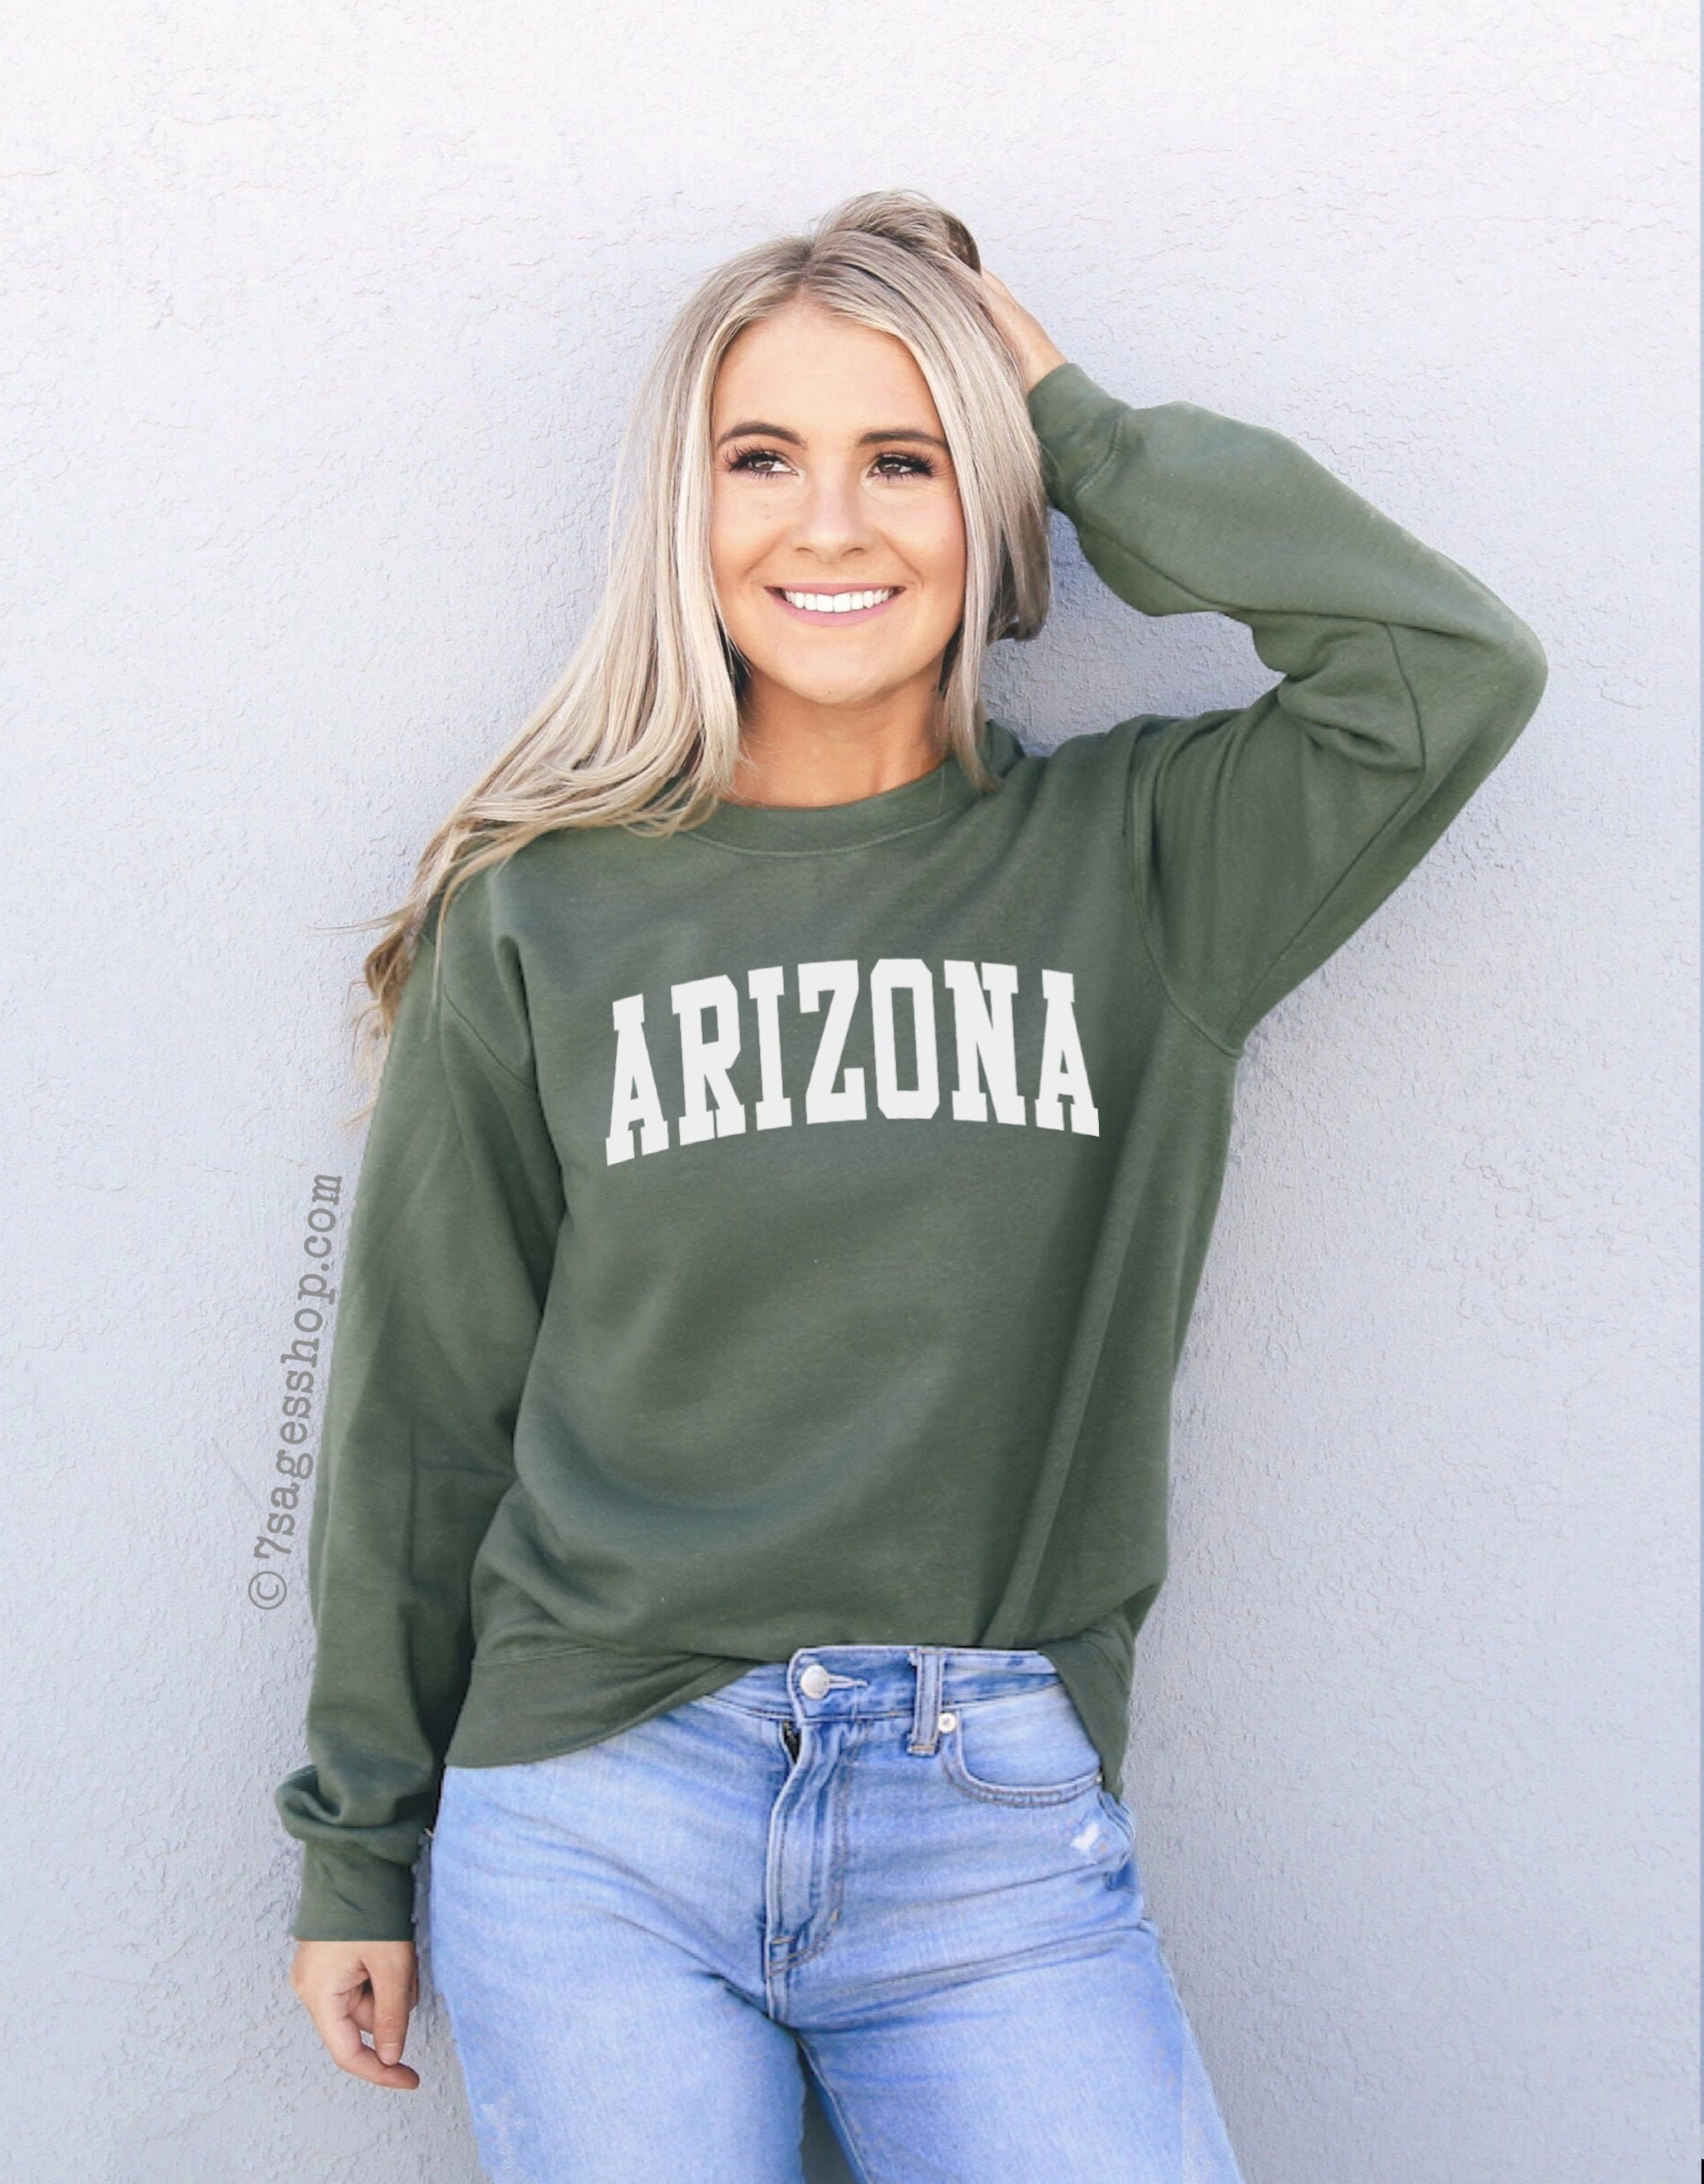 Arizona Sweatshirt AZ Sweatshirt Arizona Shirt Arizona Crewneck